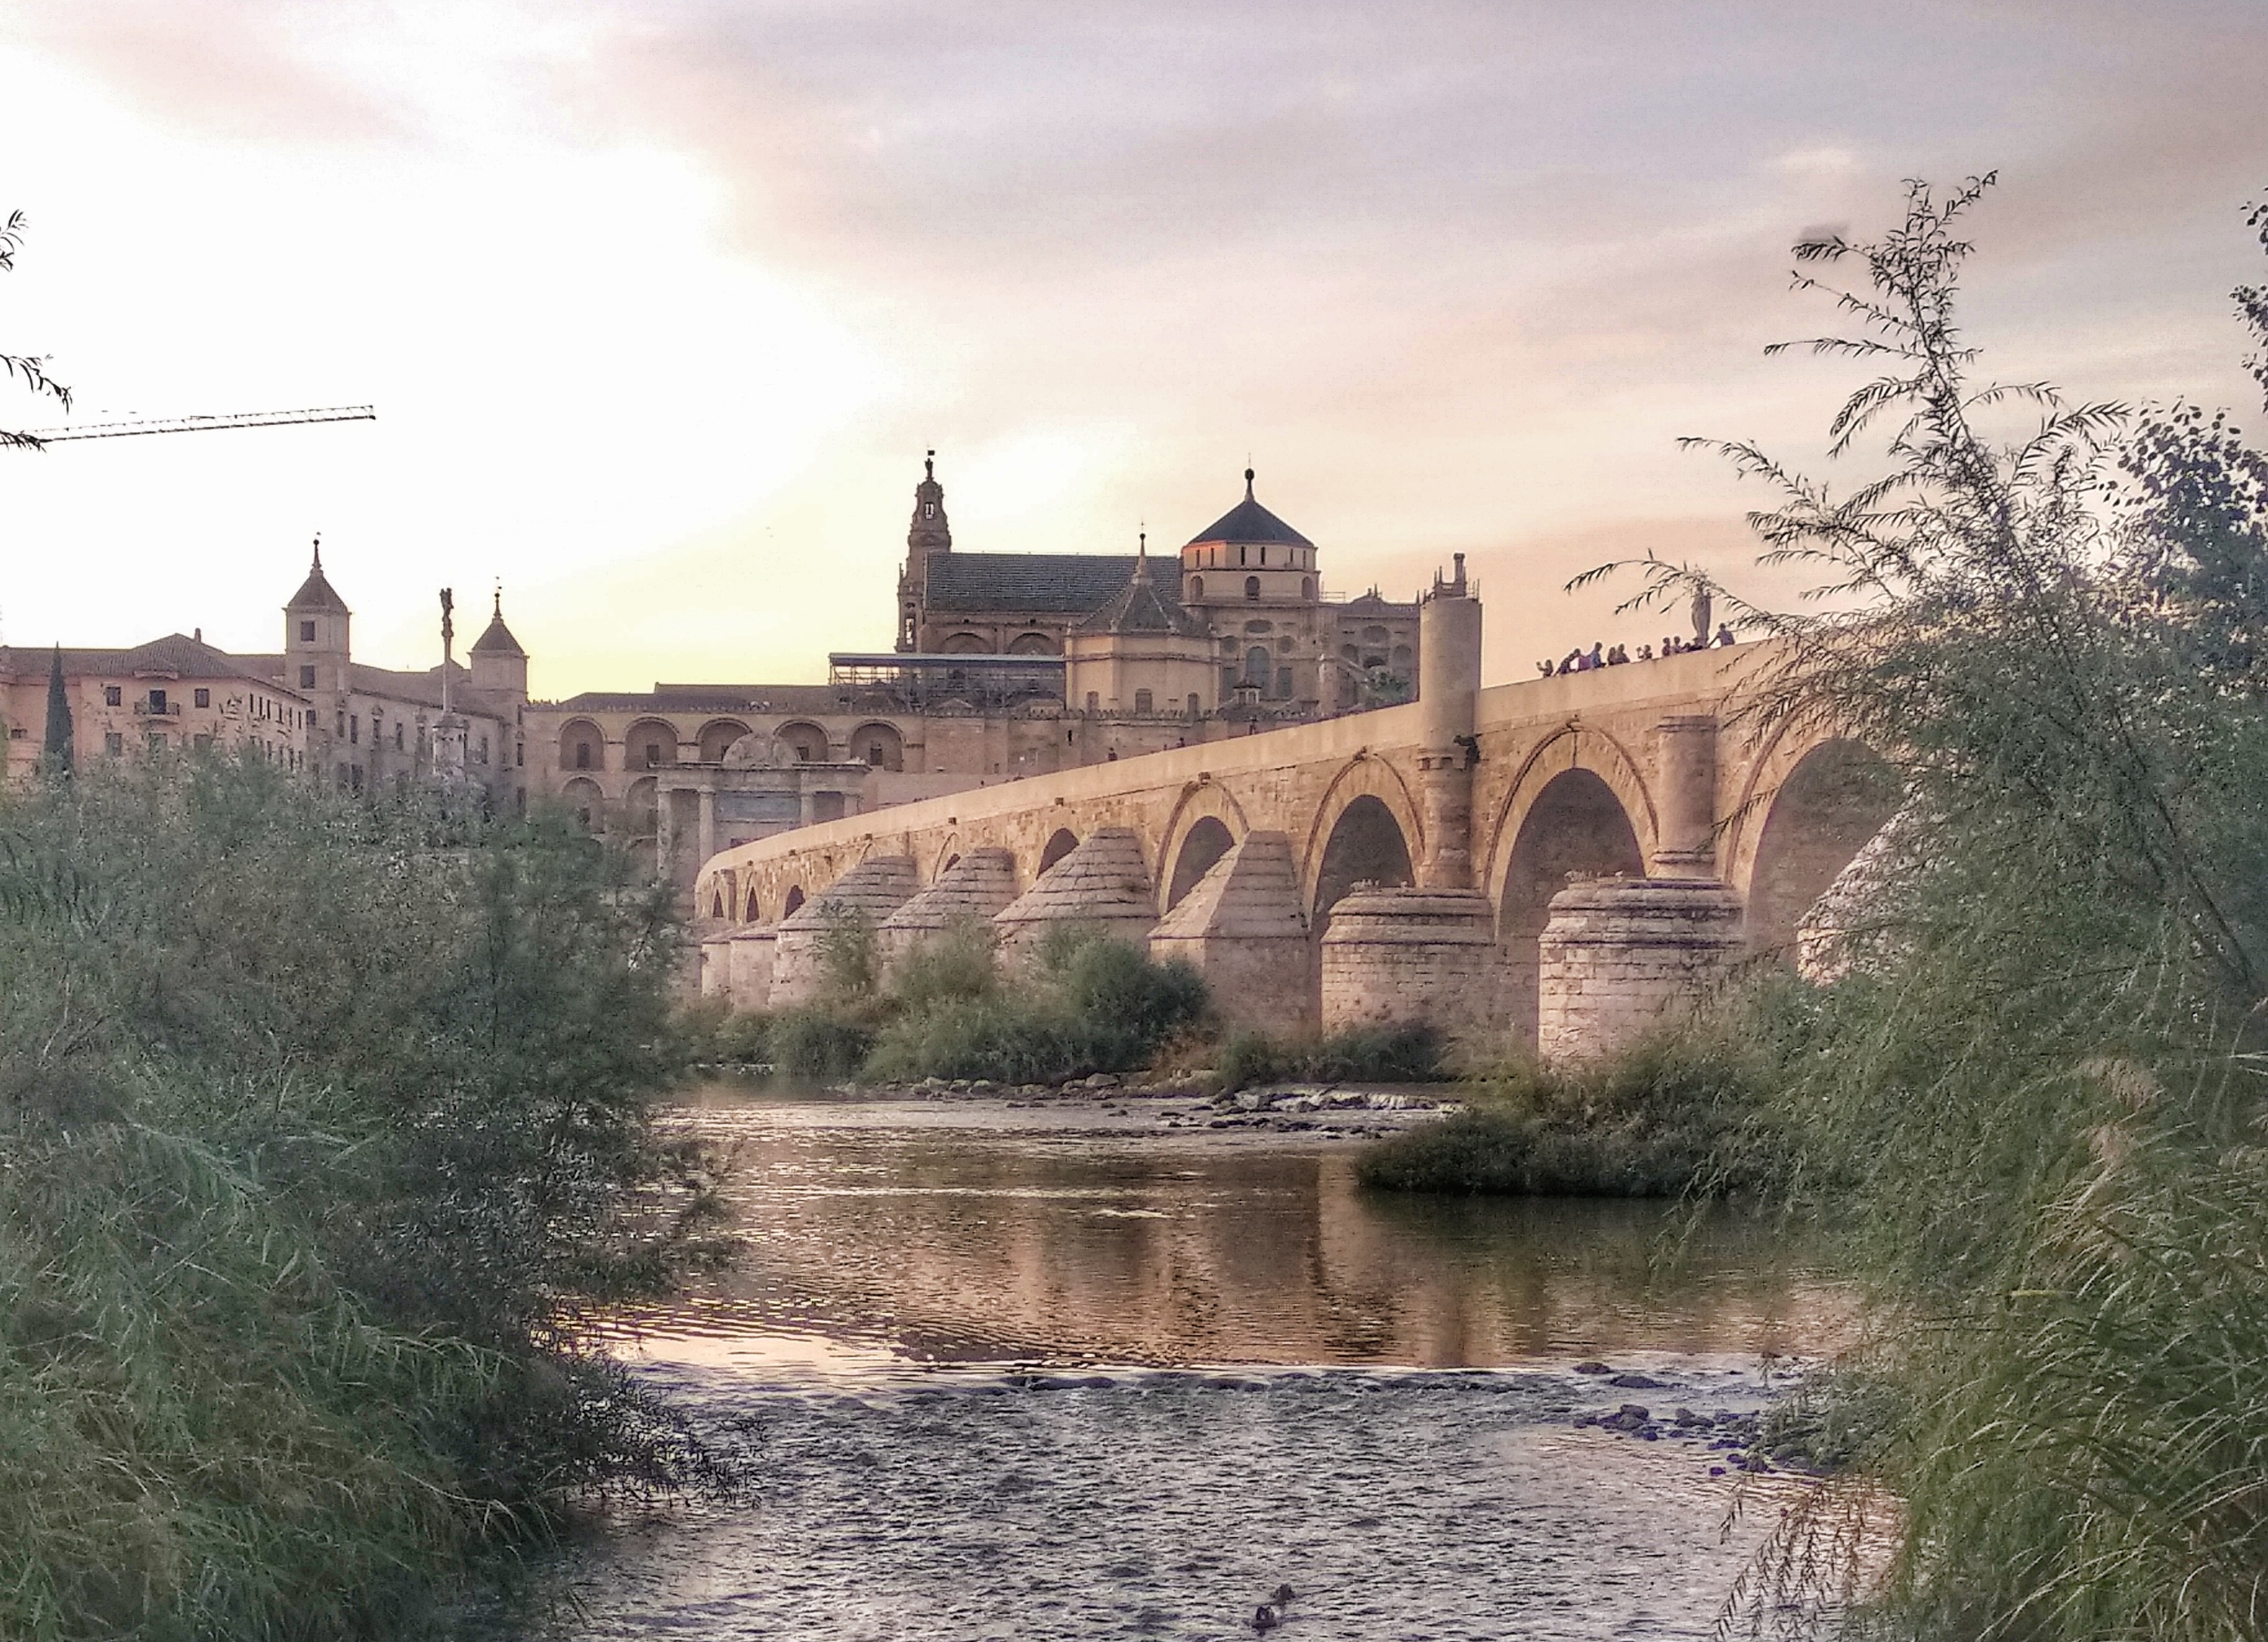 Puente romano Córdoba. Qué ver y hacer en Córdoba.